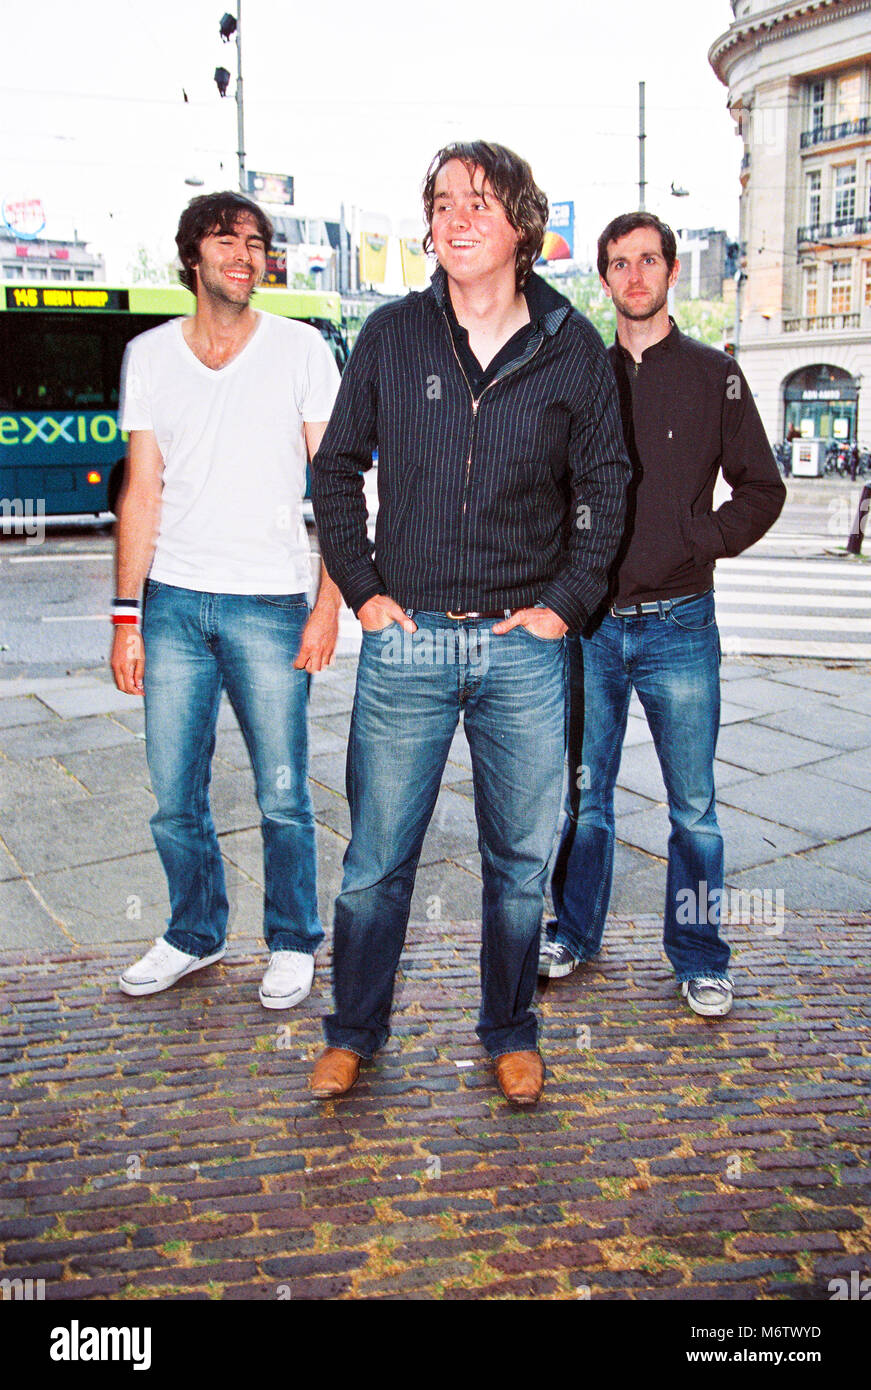 Groupe anglais Keane photographié dans Leidsekade, Amsterdam 7e juillet 2004, Pays-Bas, Europe Banque D'Images